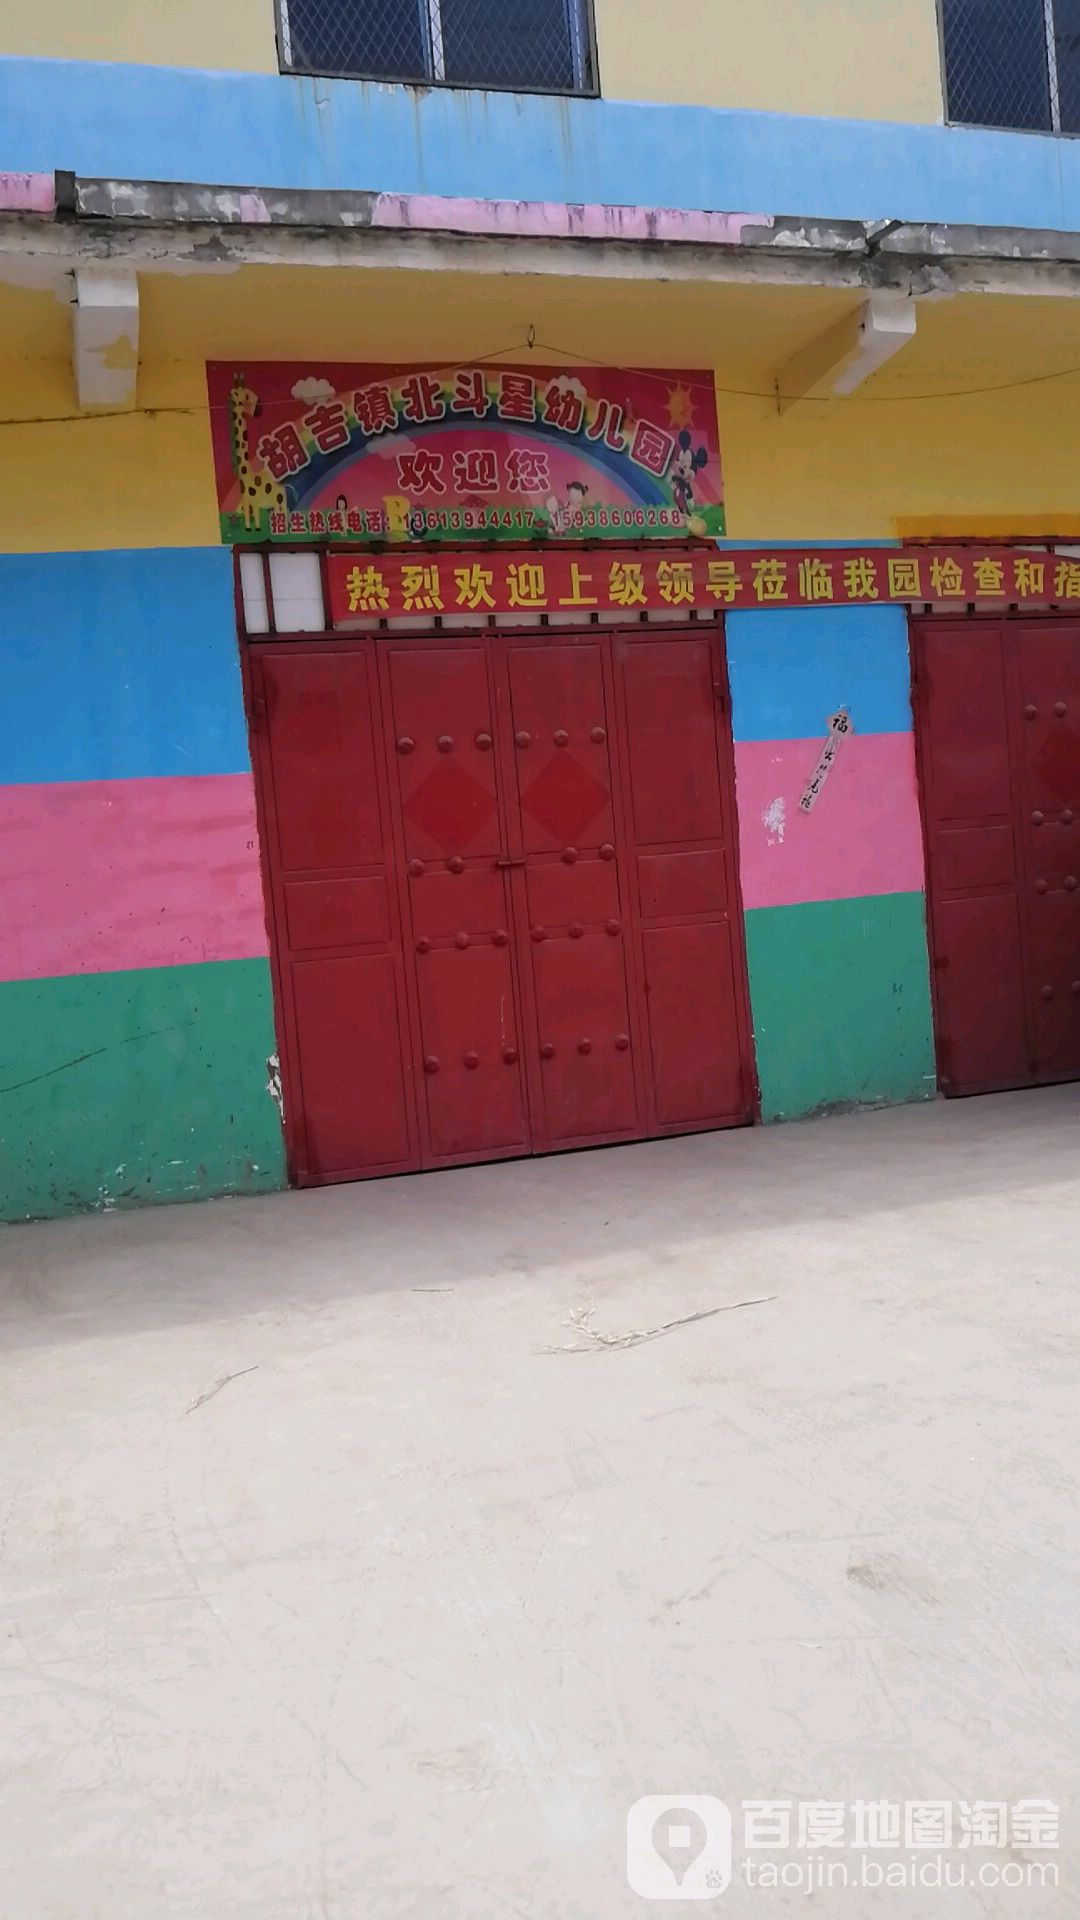 胡吉镇北斗星幼儿园的图片